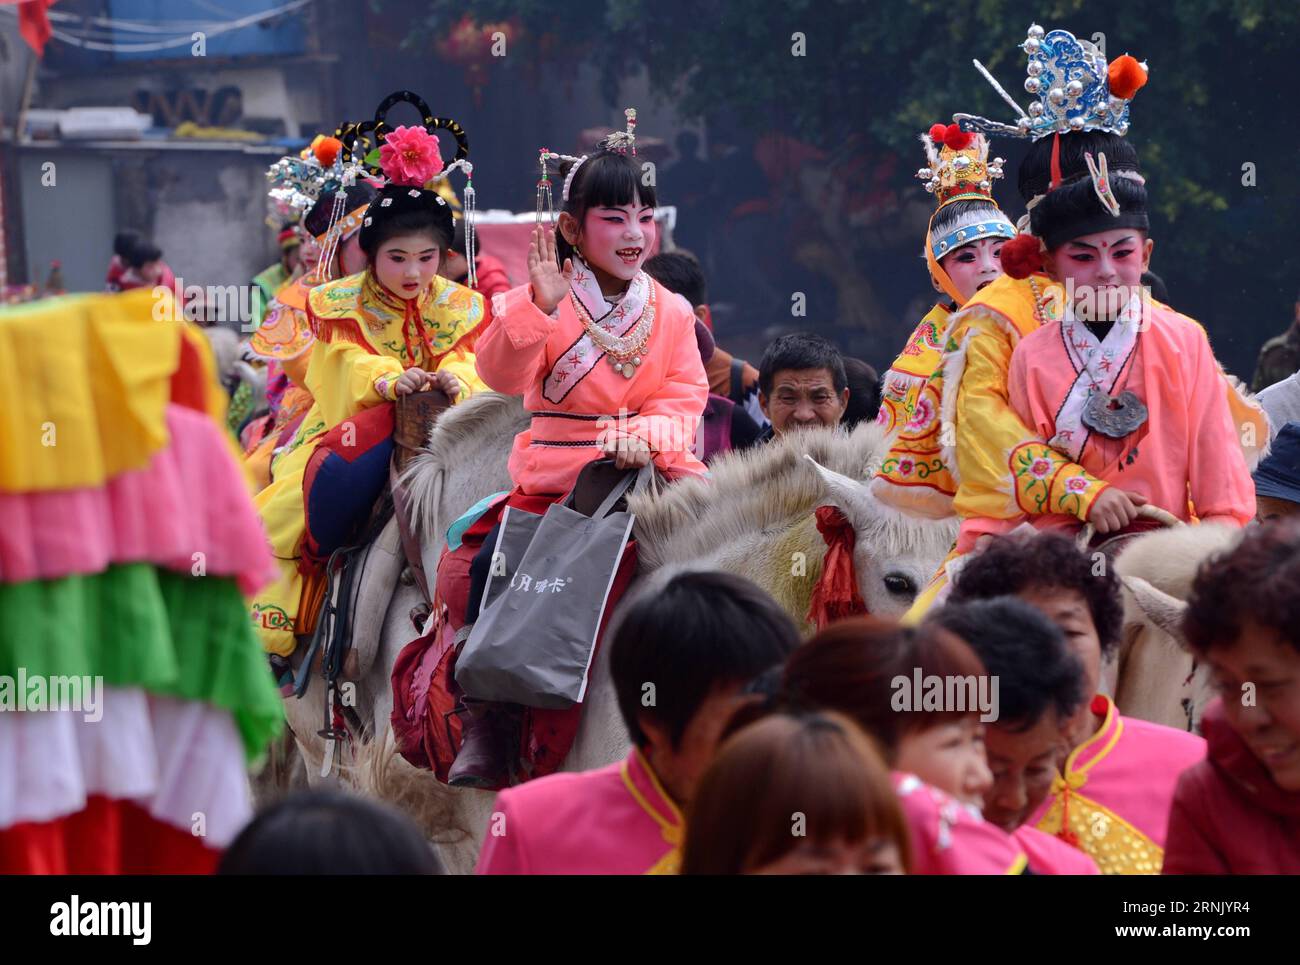 (170222) -- PUTIAN, 22 febbraio 2017 -- sfilata di bambini a cavallo nel villaggio di Yangwei, città di Putian nella provincia del Fujian della Cina sudorientale, 22 febbraio 2017. I bambini vestiti da figure leggendarie sfilano per le strade qui nel 26° giorno del primo mese del calendario lunare cinese. Pregare per la pace, la prosperità e il buon raccolto è una tradizione di lunga data. ) (Lb) CHINA-FUJIAN-PUTIAN-TRADITION (CN) ZhangxGuojun PUBLICATIONxNOTxINxCHN Putian 22 febbraio 2017 Parata dei bambini A cavallo nel villaggio di Putian città della provincia del Fujian della Cina sudorientale 22 febbraio 2017 bambini vestiti da figure leggendarie P Foto Stock